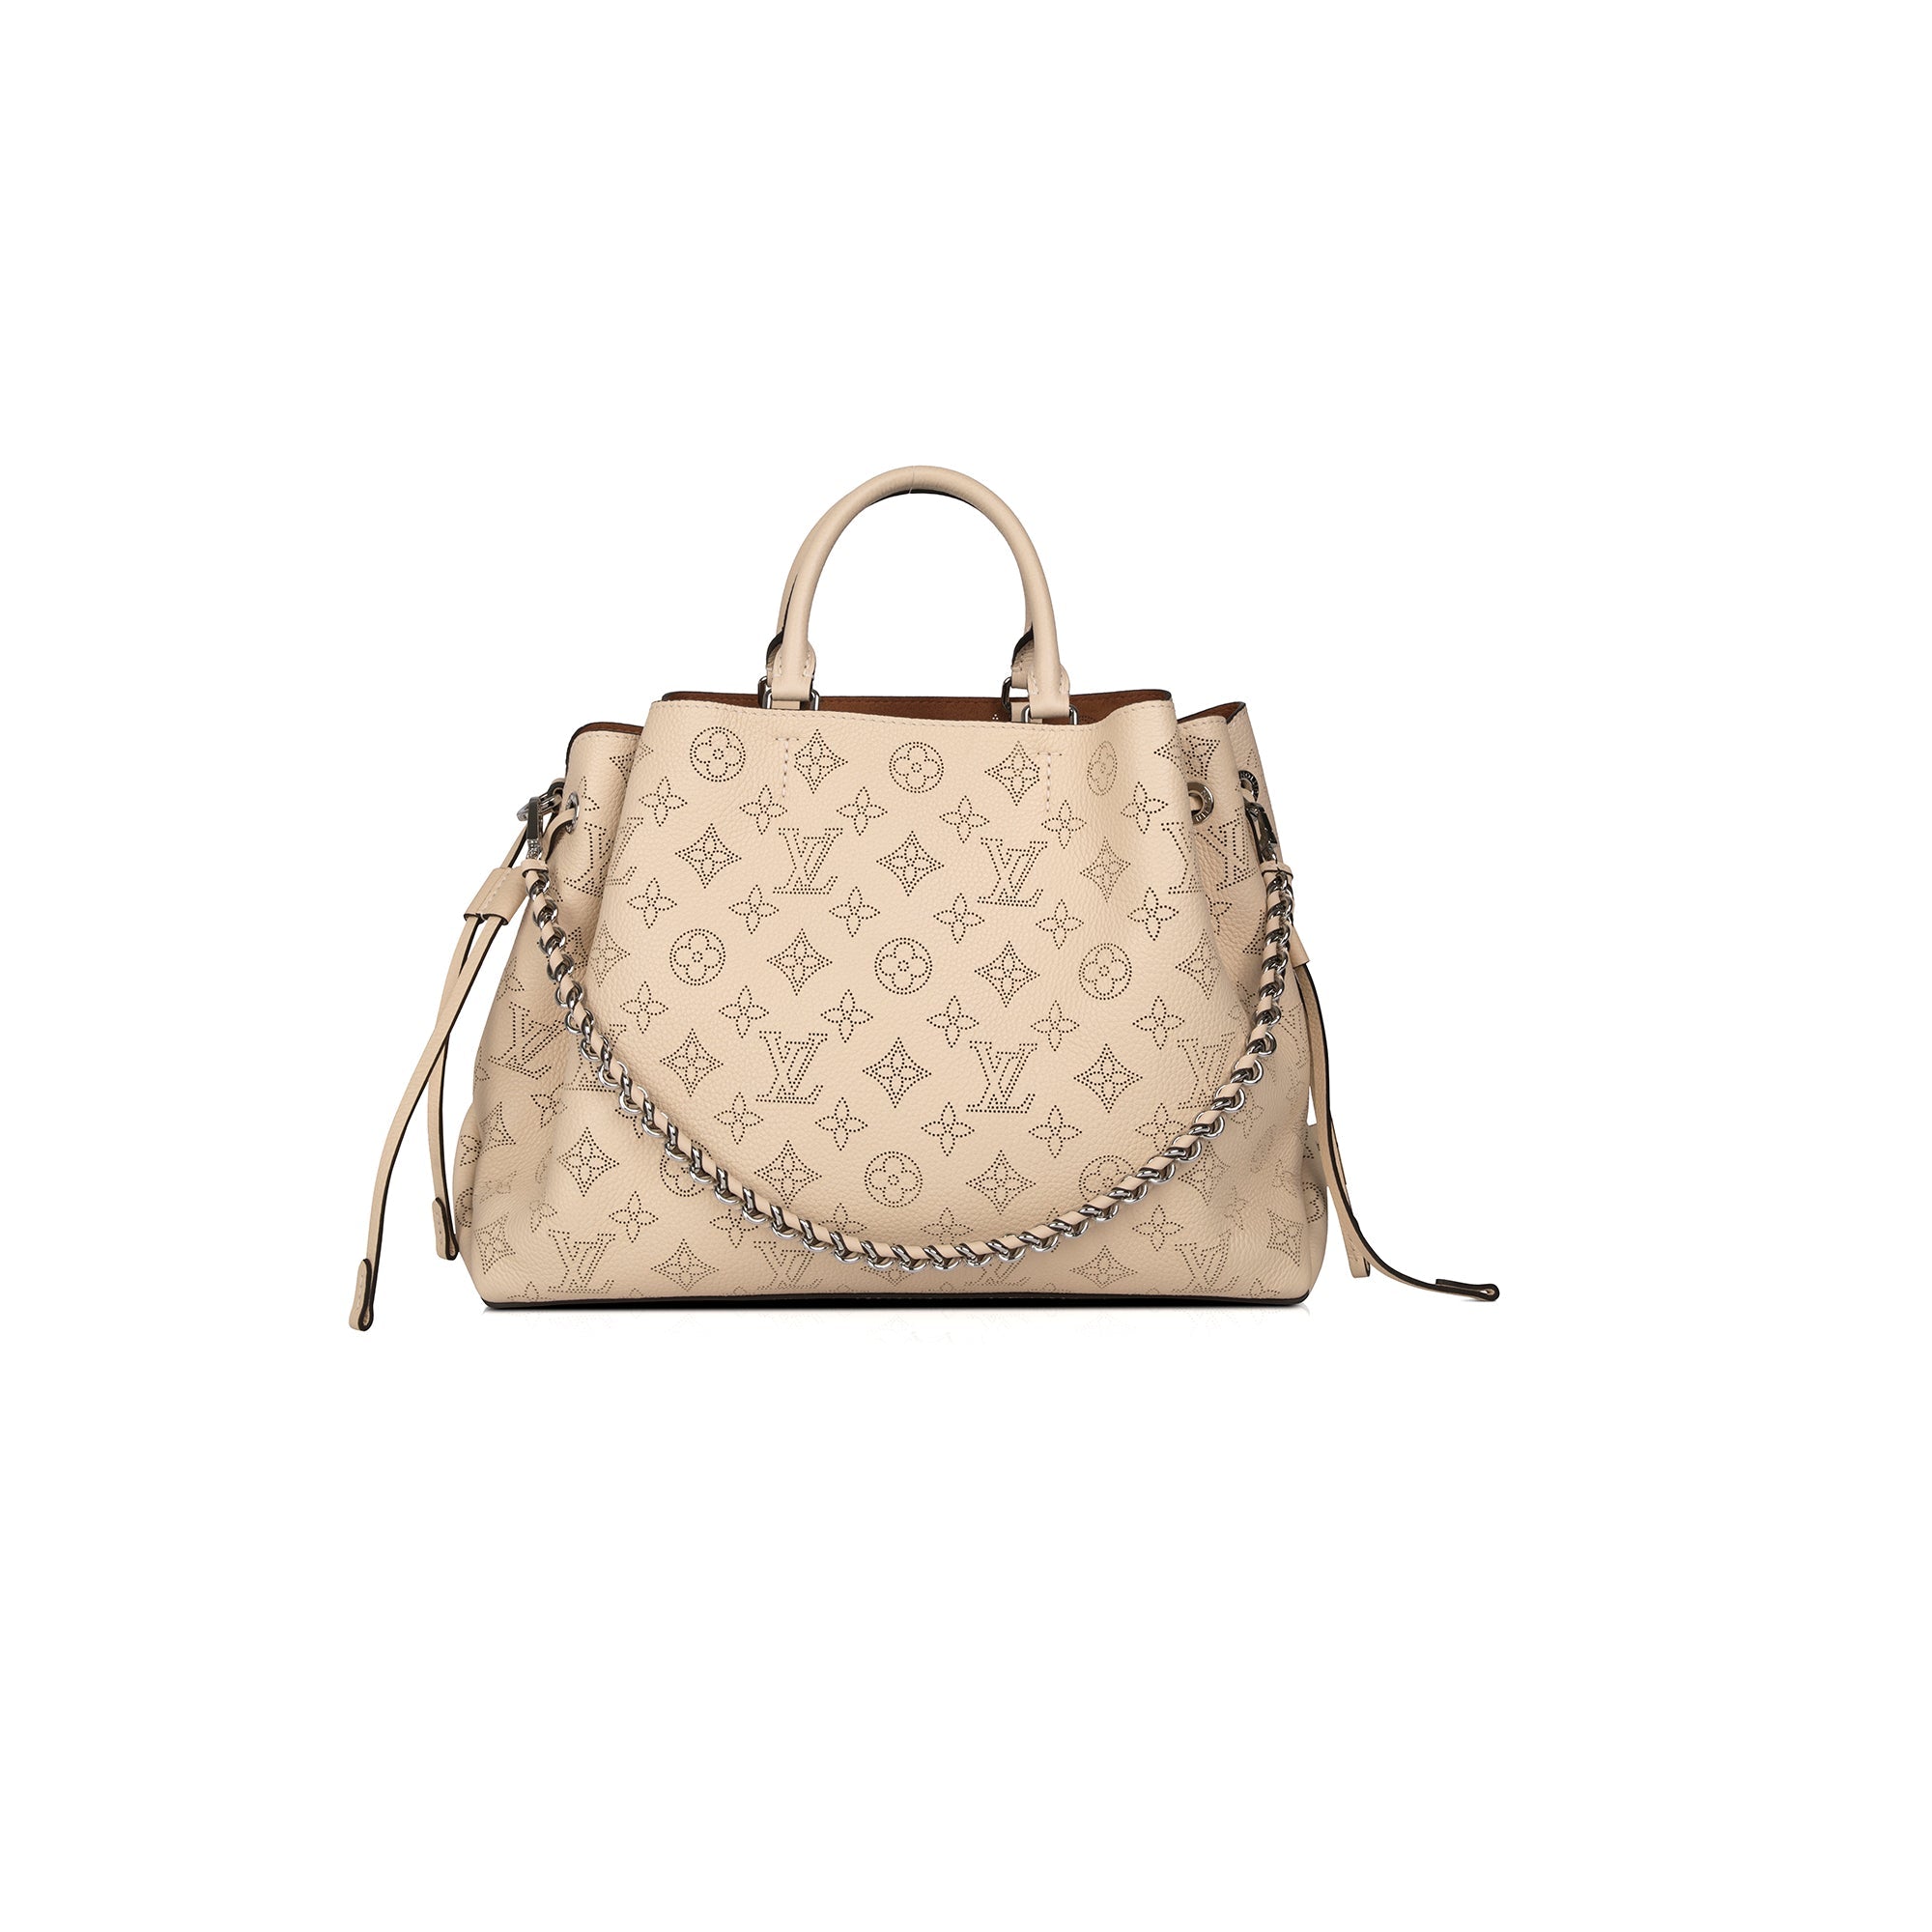 Bella Tote Bag Mahina Leather - Handbags M59201